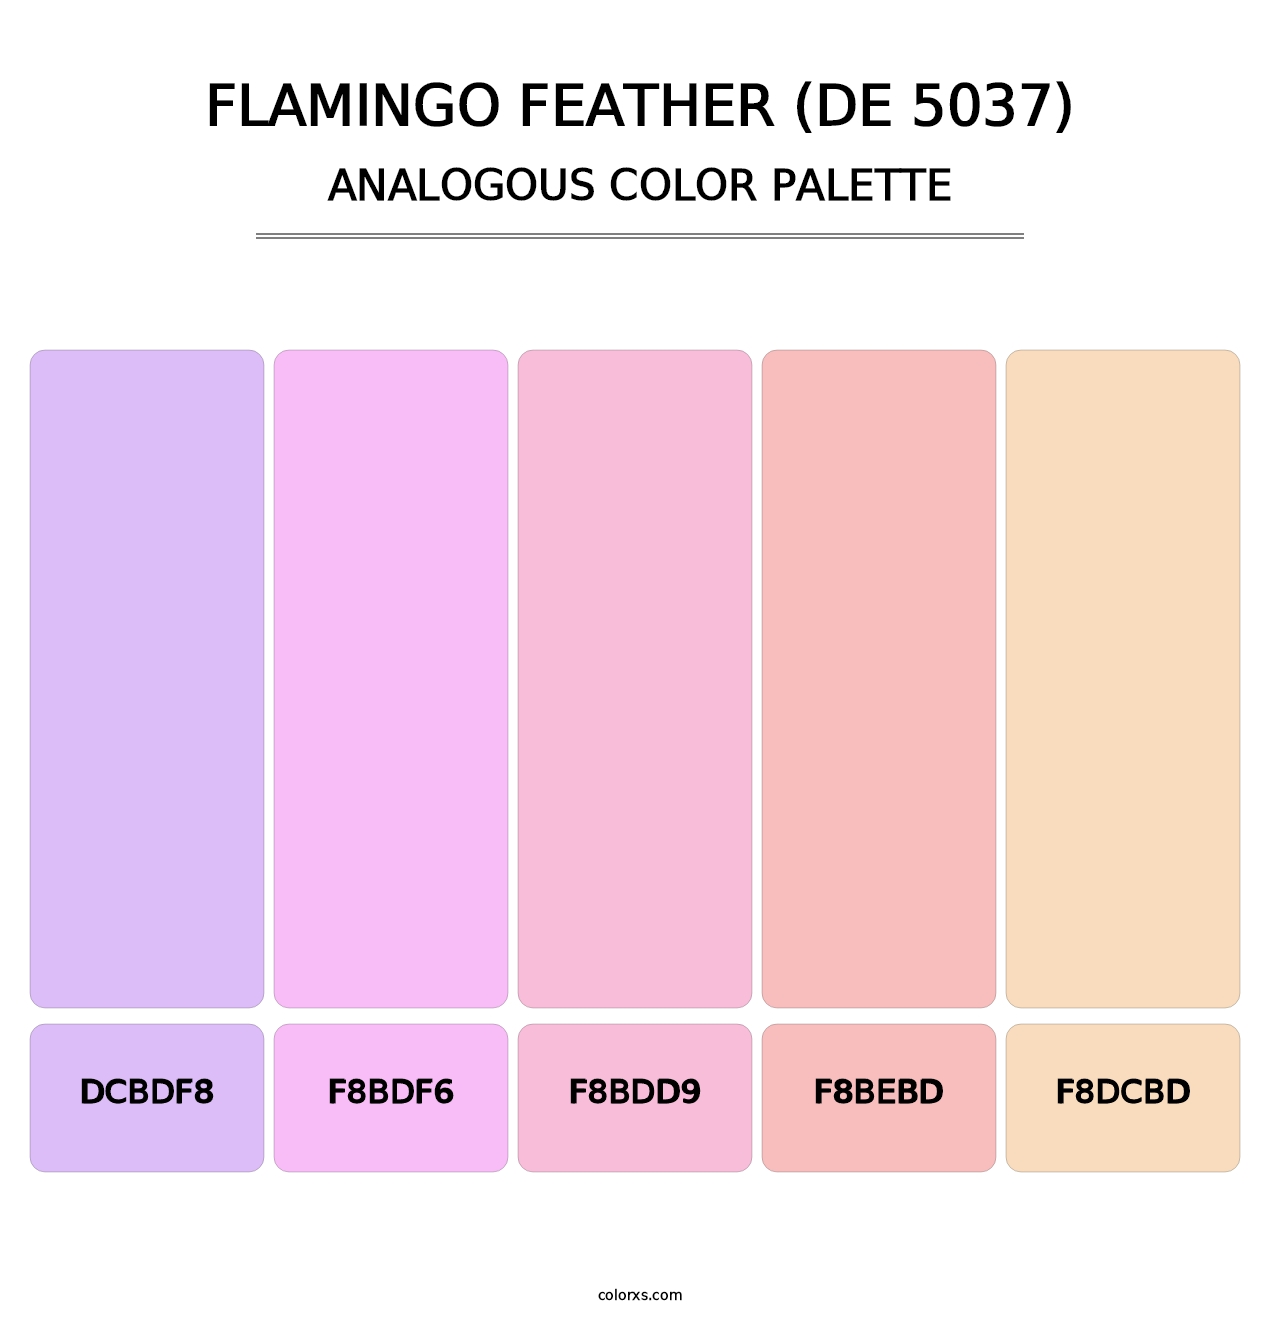 Flamingo Feather (DE 5037) - Analogous Color Palette